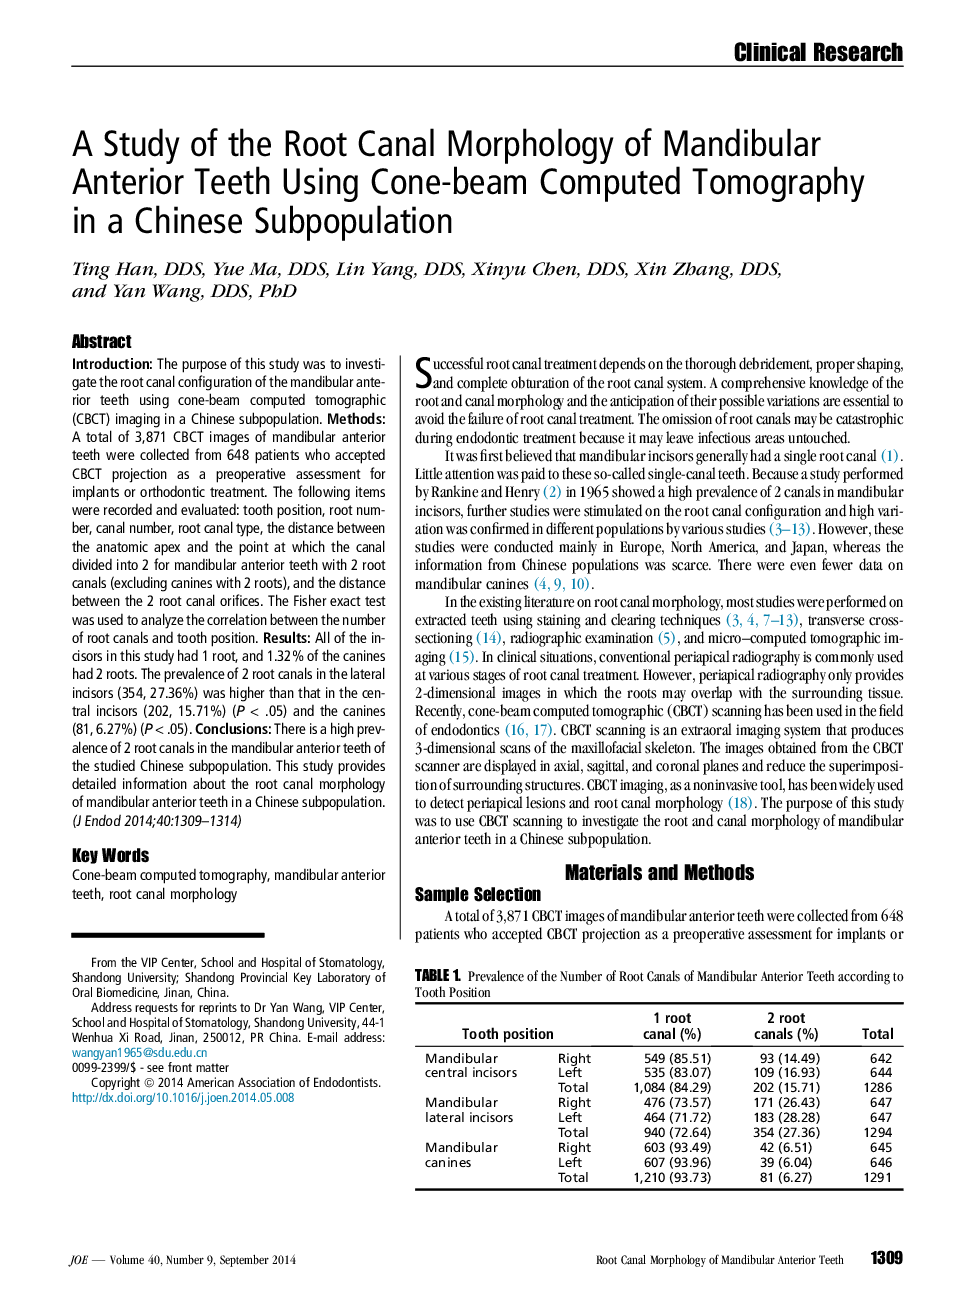 بررسی مرفولوژی کانال ریشه دندان های قدامی مندبول با استفاده از توموگرافی کامپیوتری پرتو کروی در زیرگروه چینی 